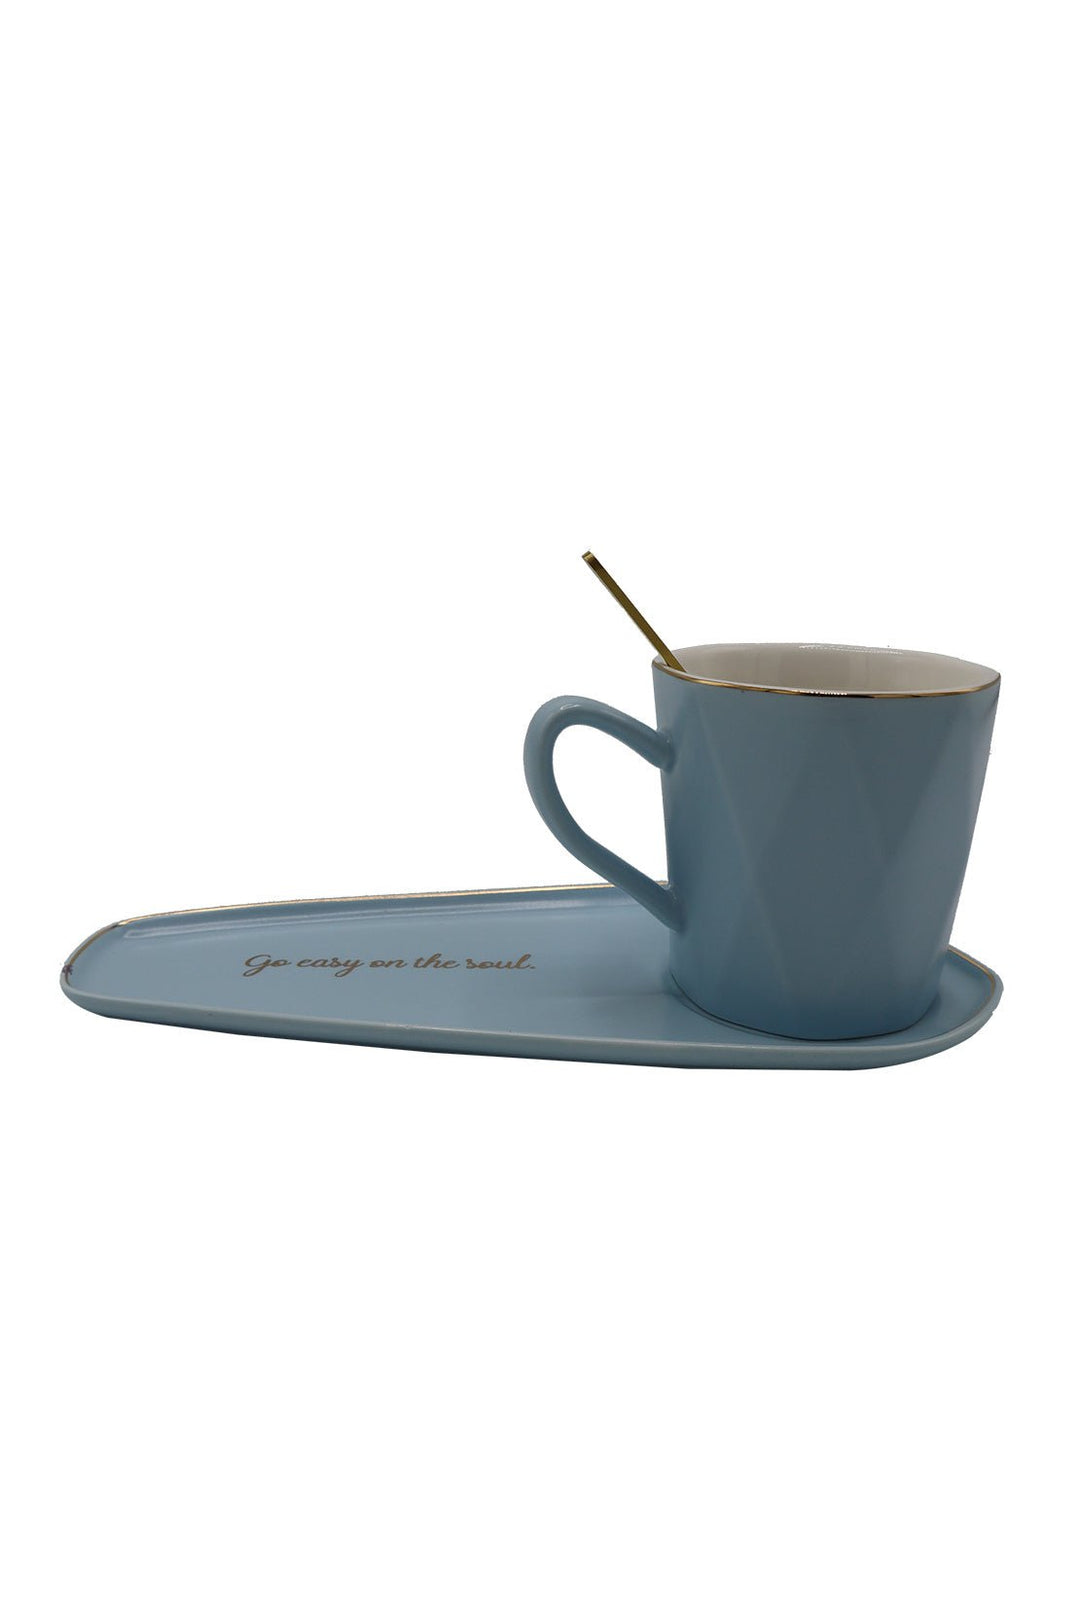 Ceramic Mug With Tray Sky Blue - V Surfaces